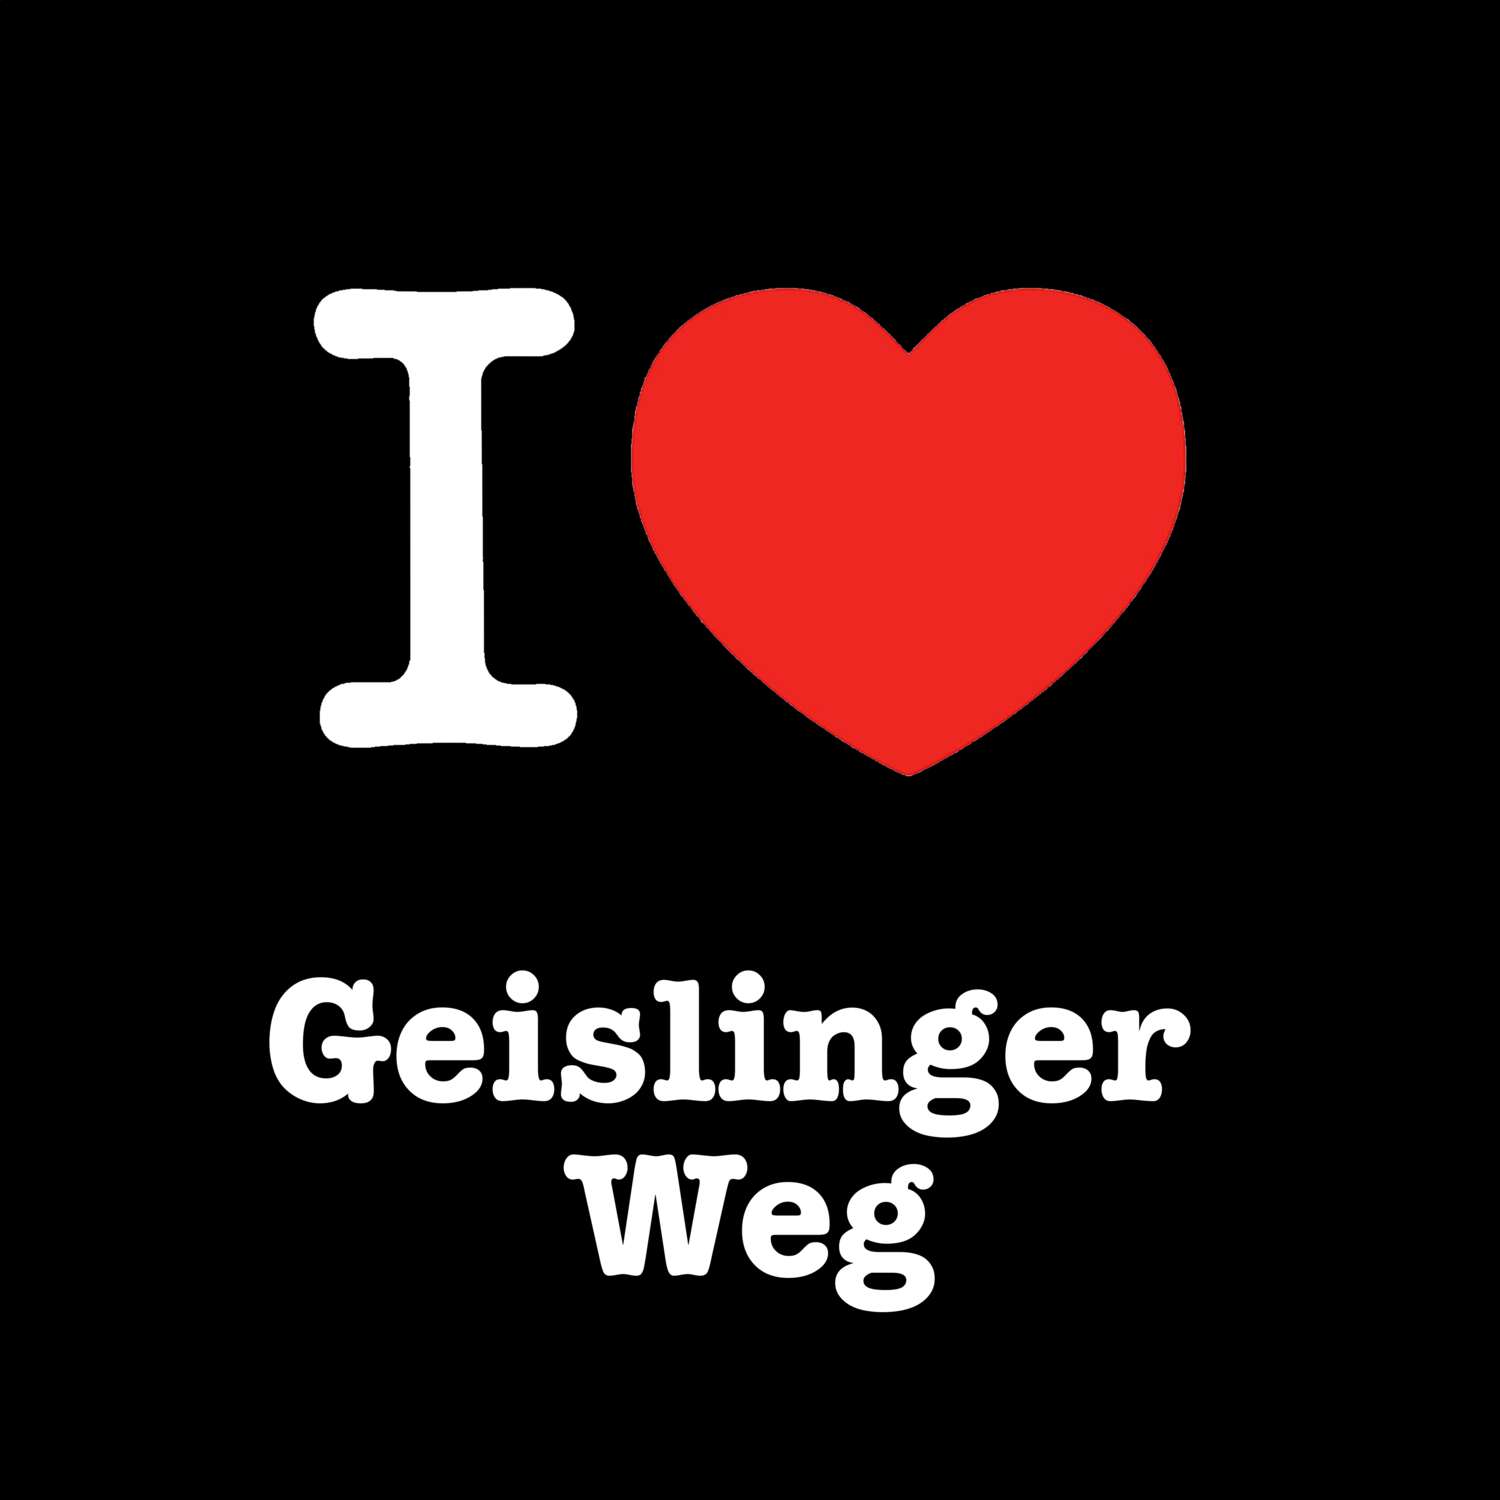 Geislinger Weg T-Shirt »I love«